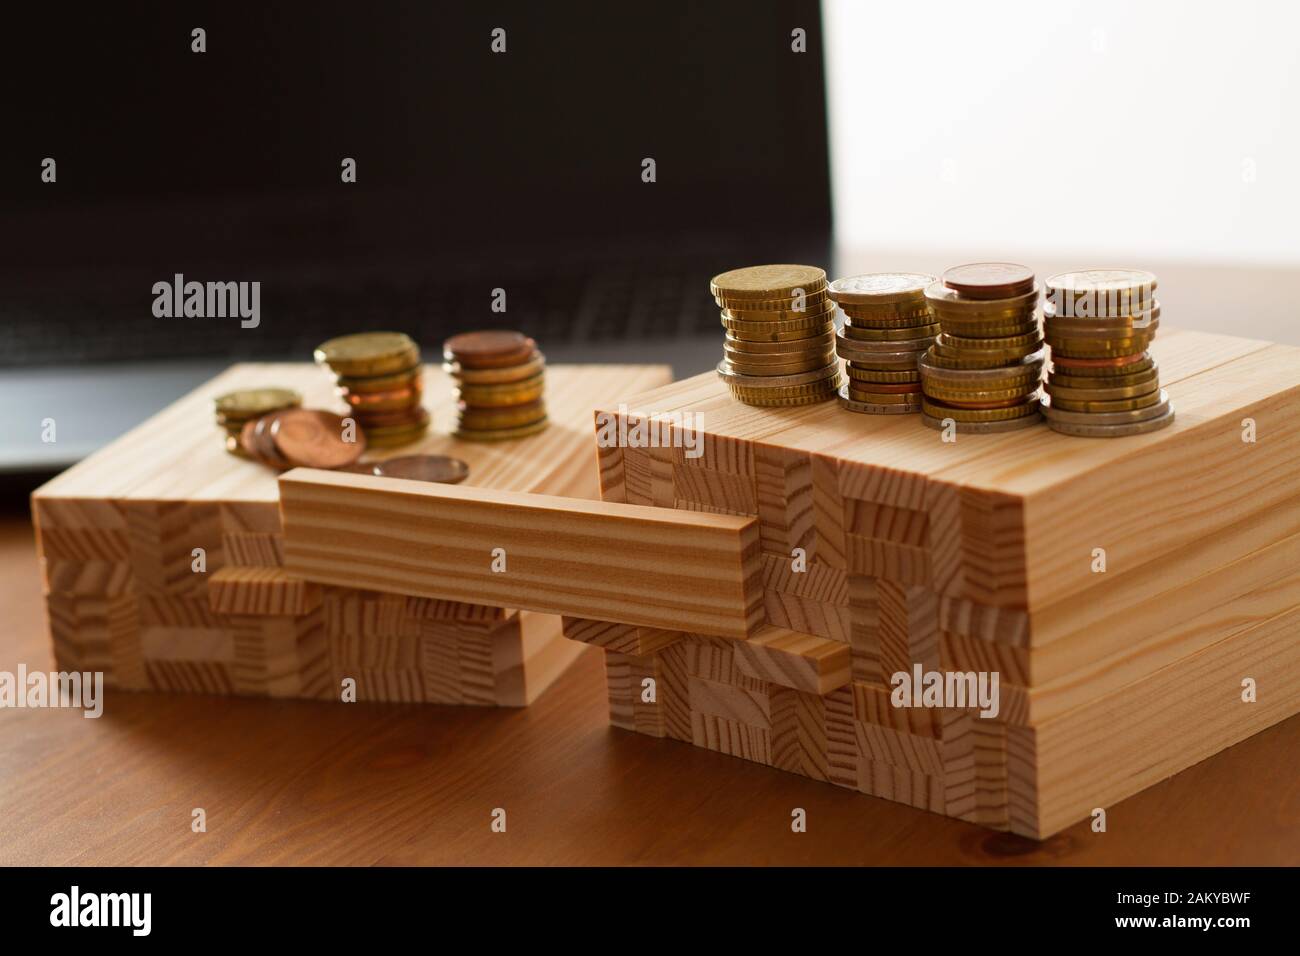 Briques de construction en bois disposées pour symboliser l'écart de genre, la discrimination, l'inégalité des salaires, les inégalités, ou des sujets similaires d'affaires/sociaux avec une lef de brique Banque D'Images